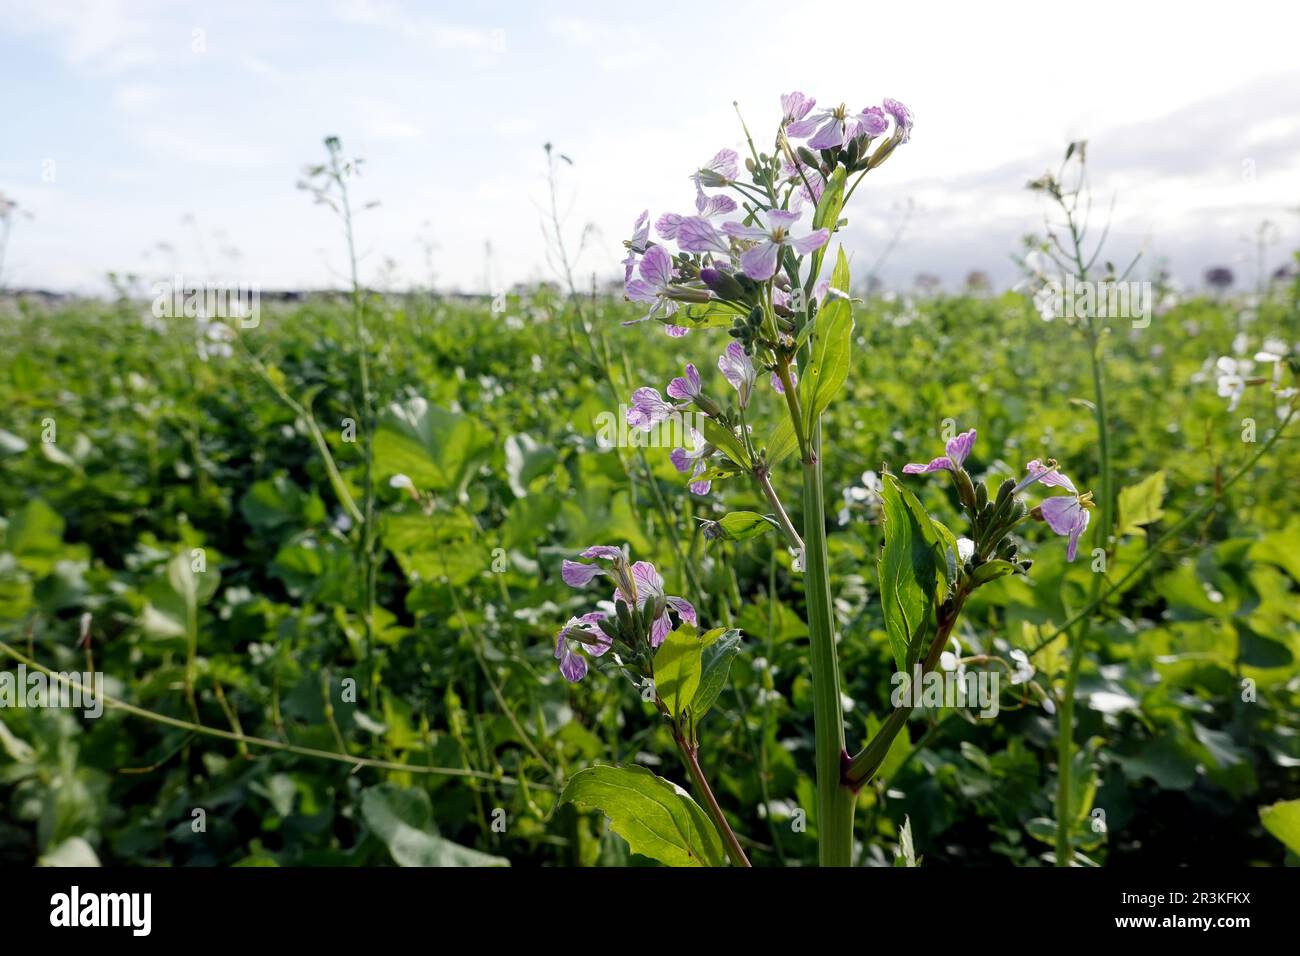 Field with oil radish (Raphanus sativus var. oleiformis) Stock Photo